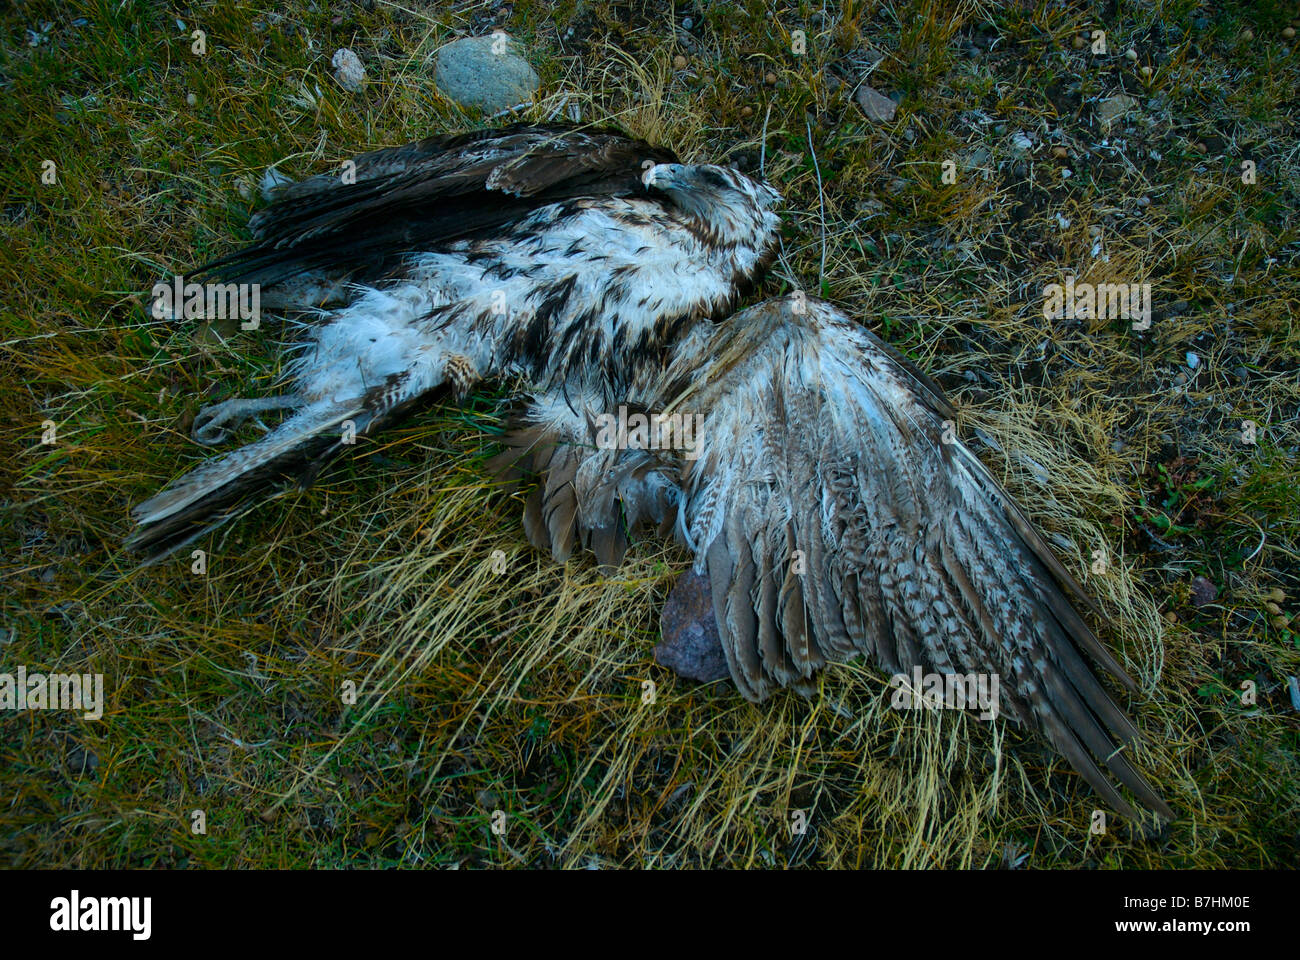 Red hawk adossés empoisonné Banque D'Images